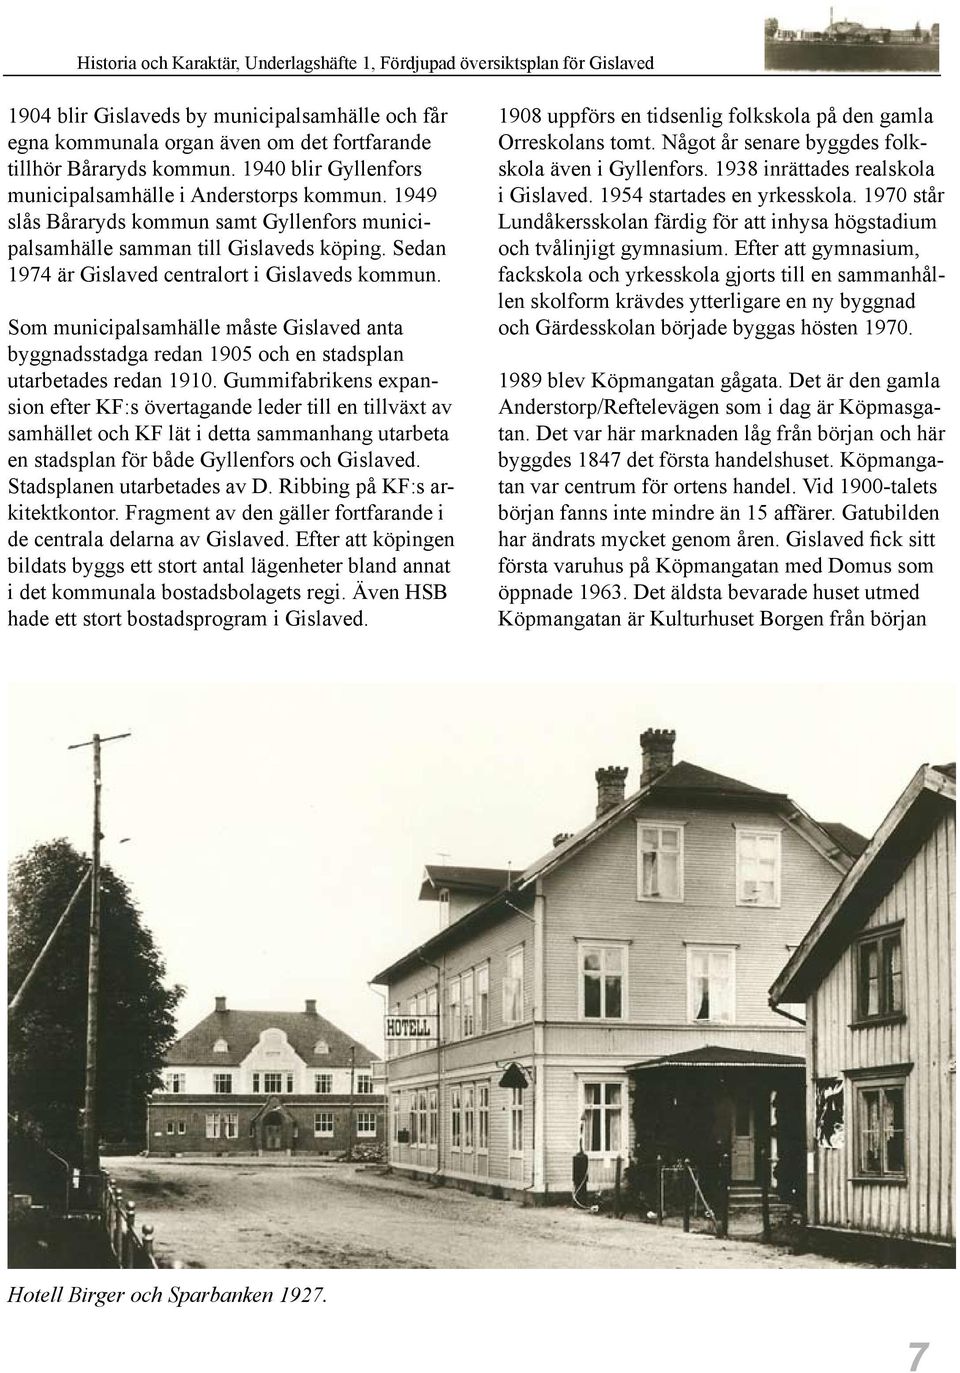 Som municipalsamhälle måste Gislaved anta byggnadsstadga redan 1905 och en stadsplan utarbetades redan 1910.